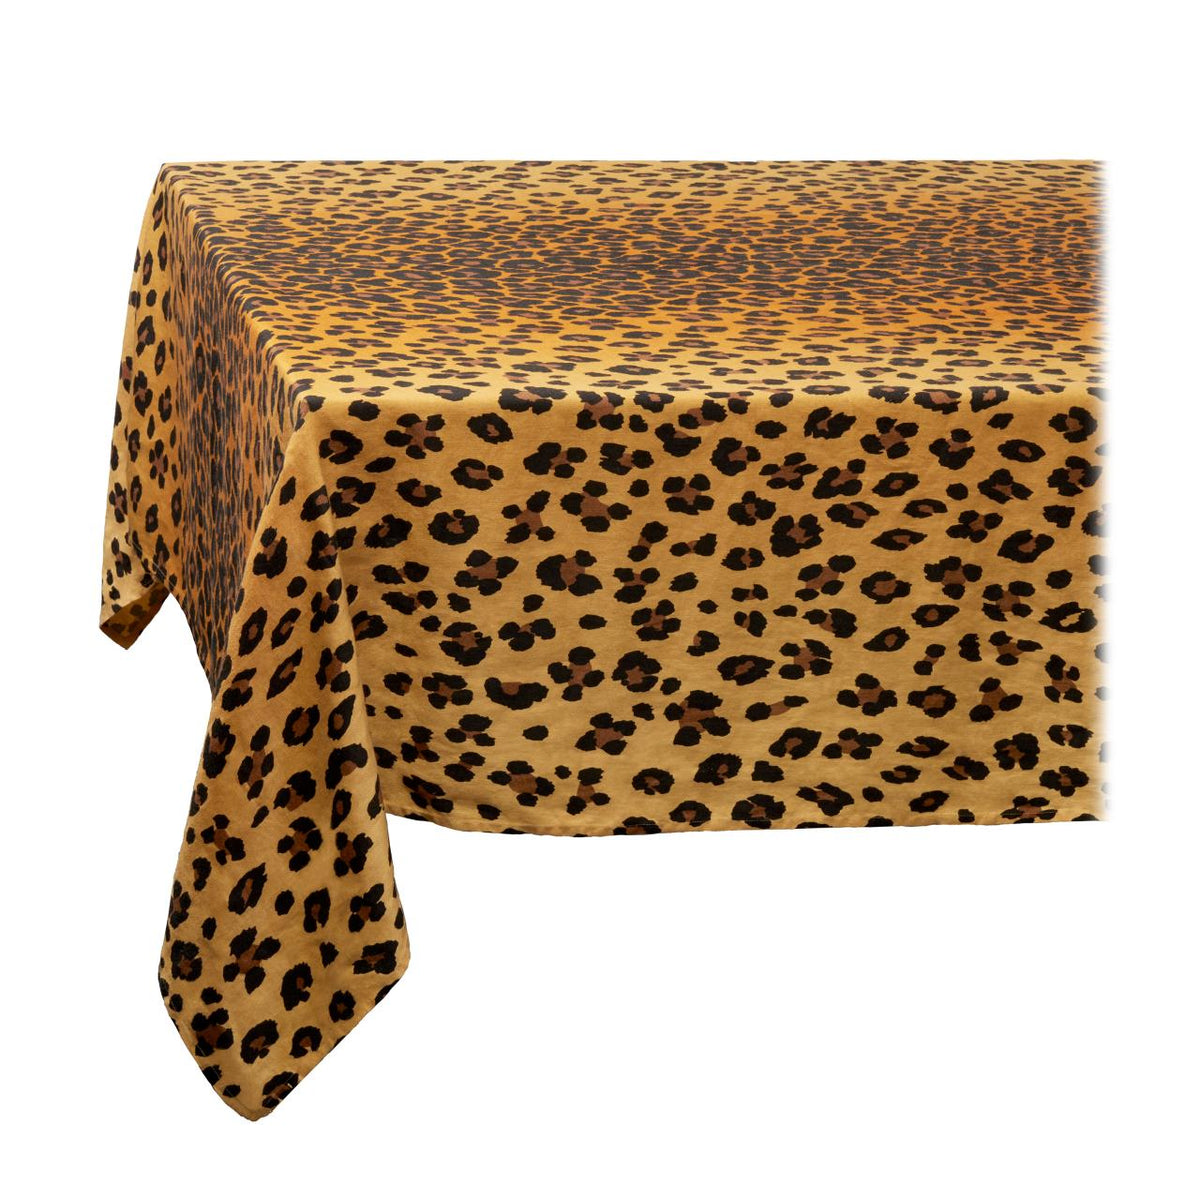 Medium Linen Sateen Leopard Tablecloth